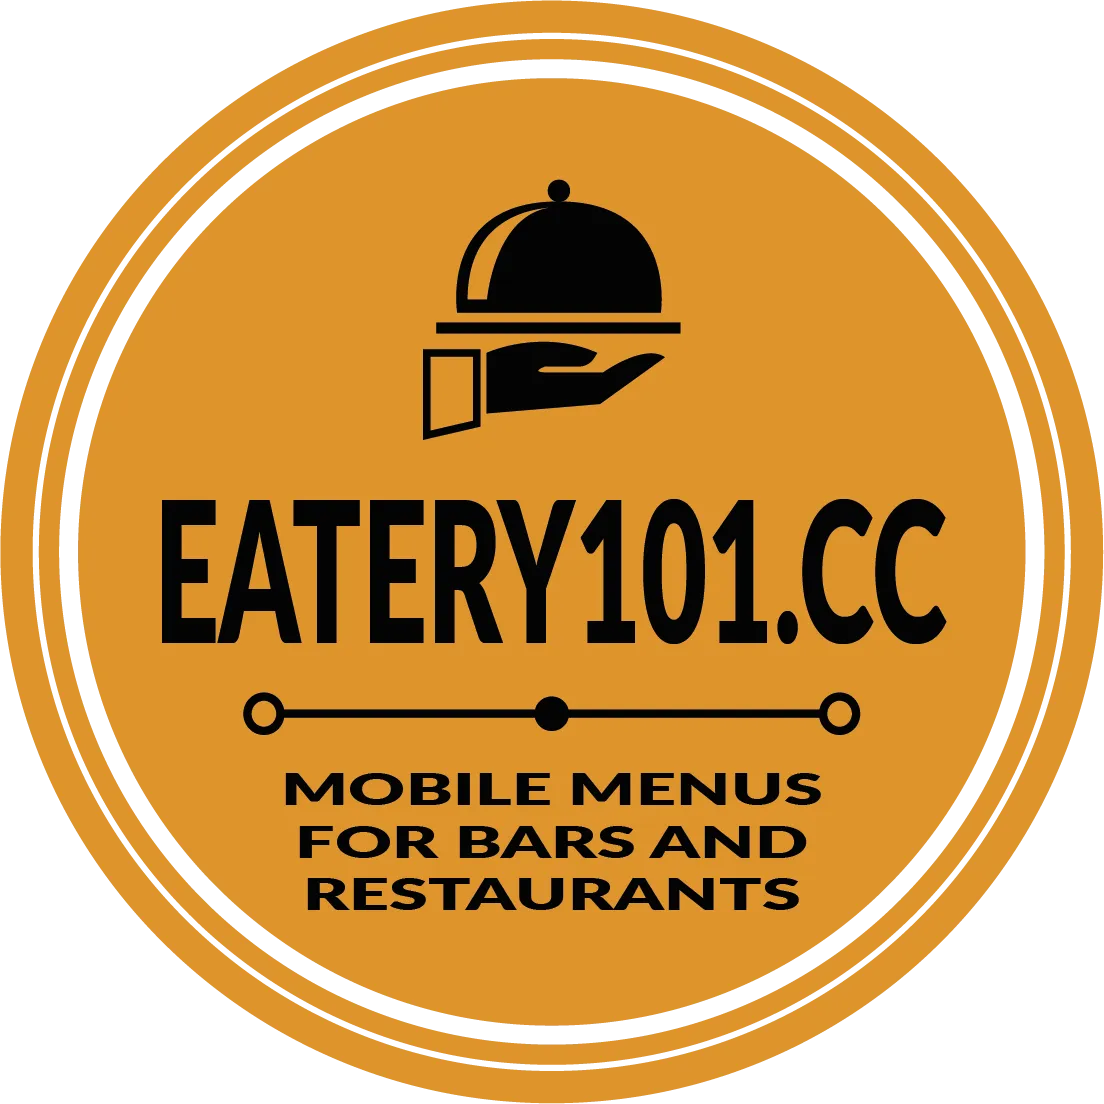 eatery101.cc